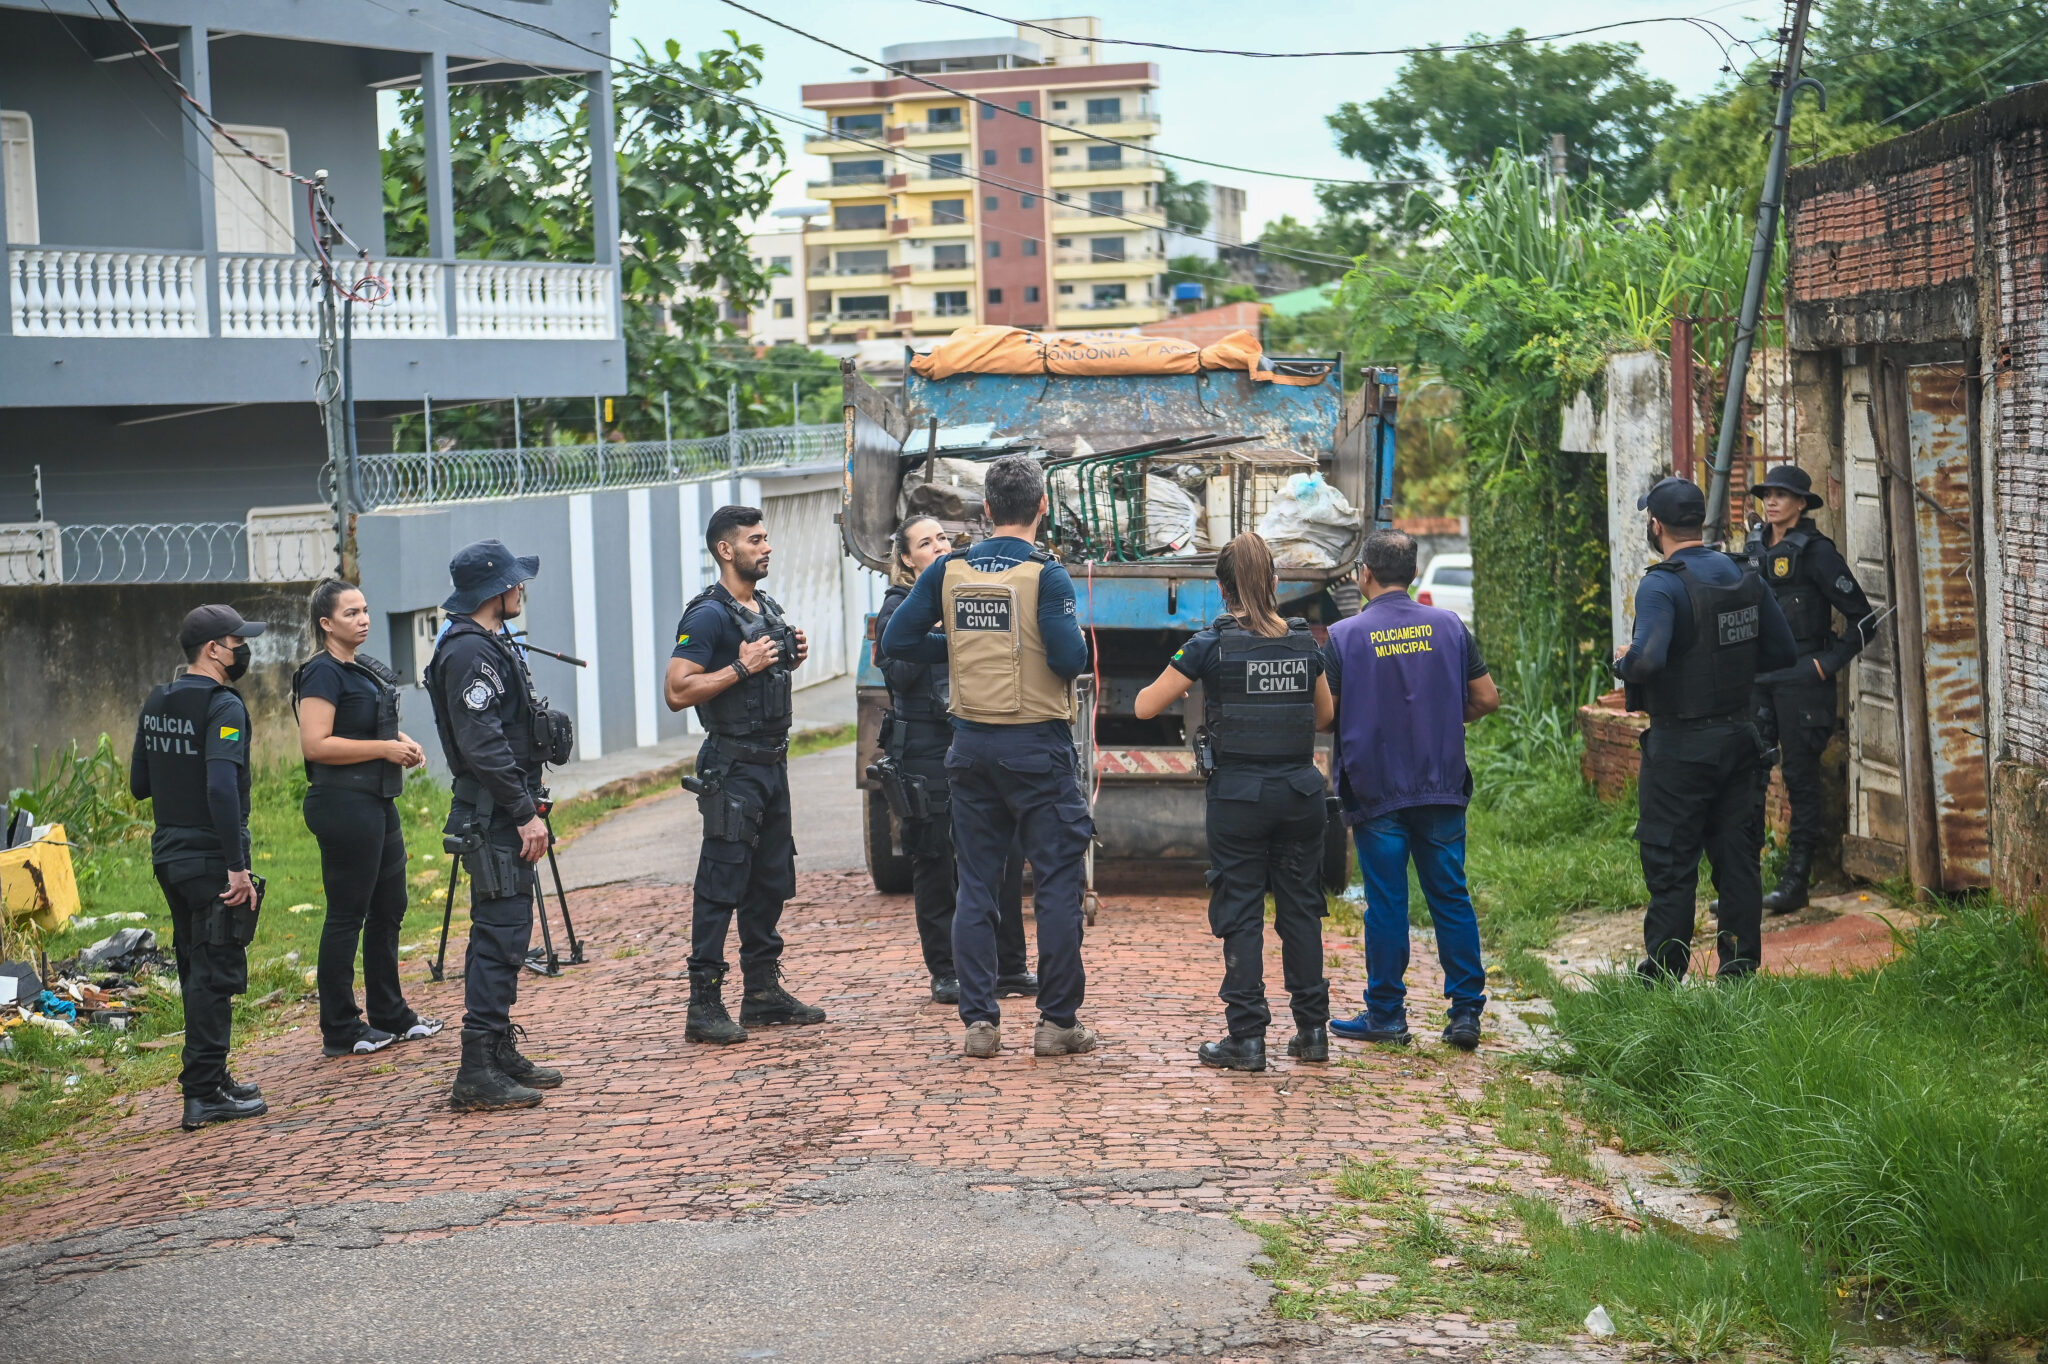 Polícia Civil identifica responsáveis por furto e receptação de fiação em Rio Branco e prende três pessoas